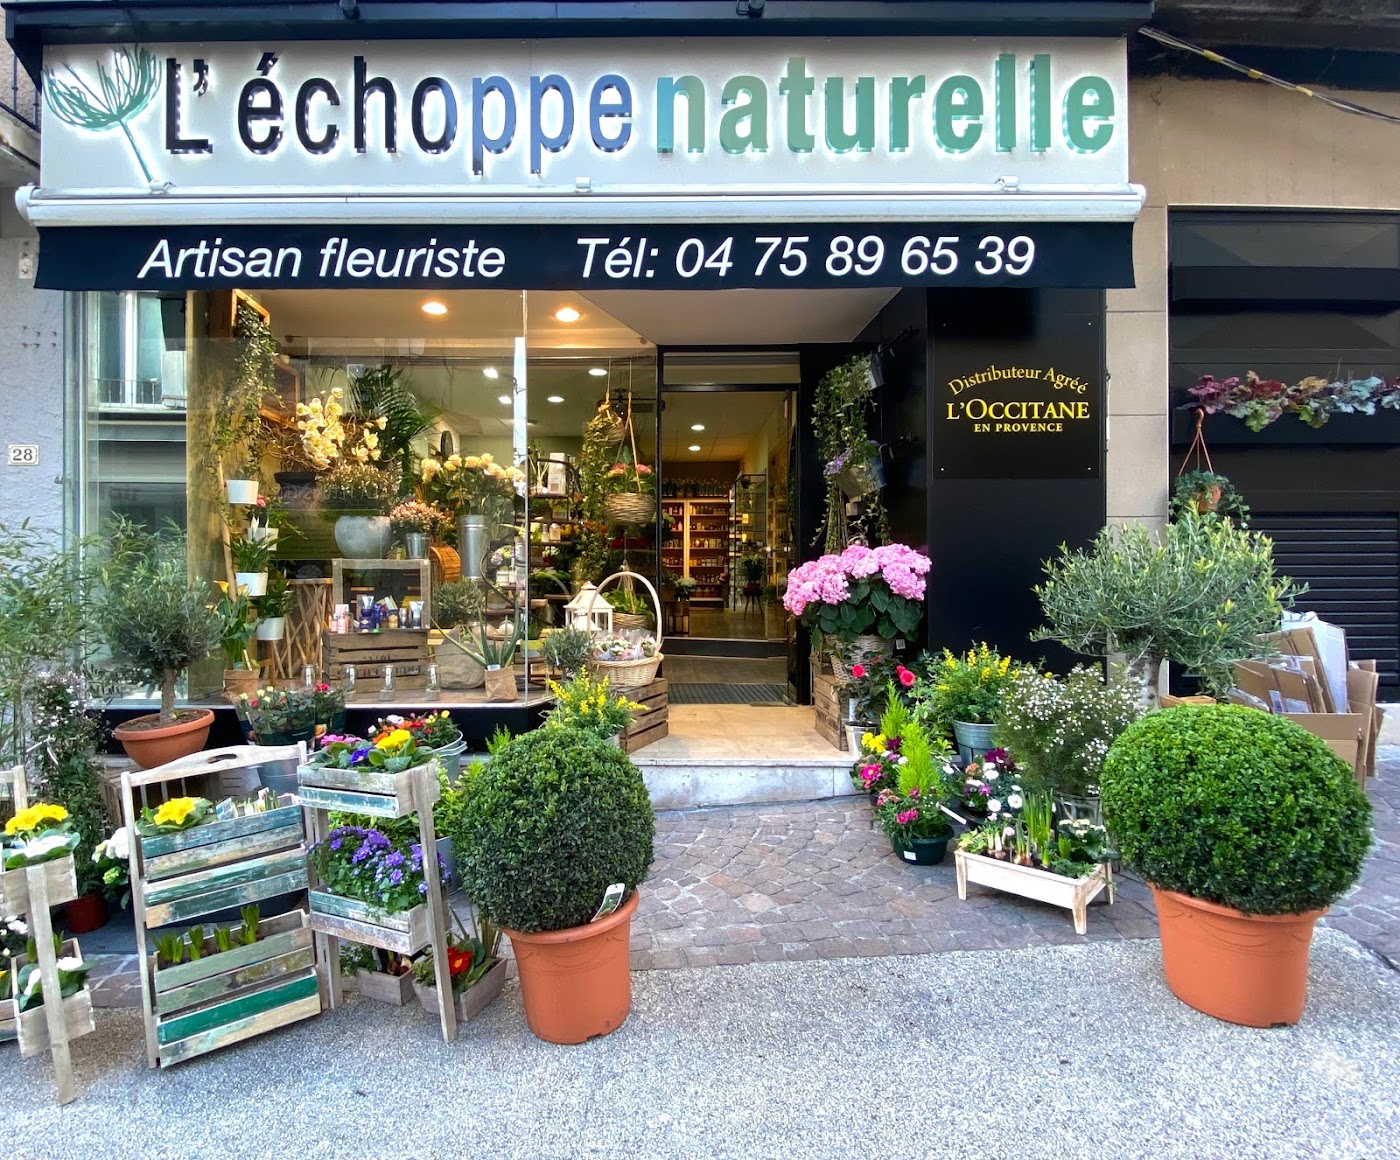 L'Echoppe Naturelle, Artisan Fleuriste Aubenas